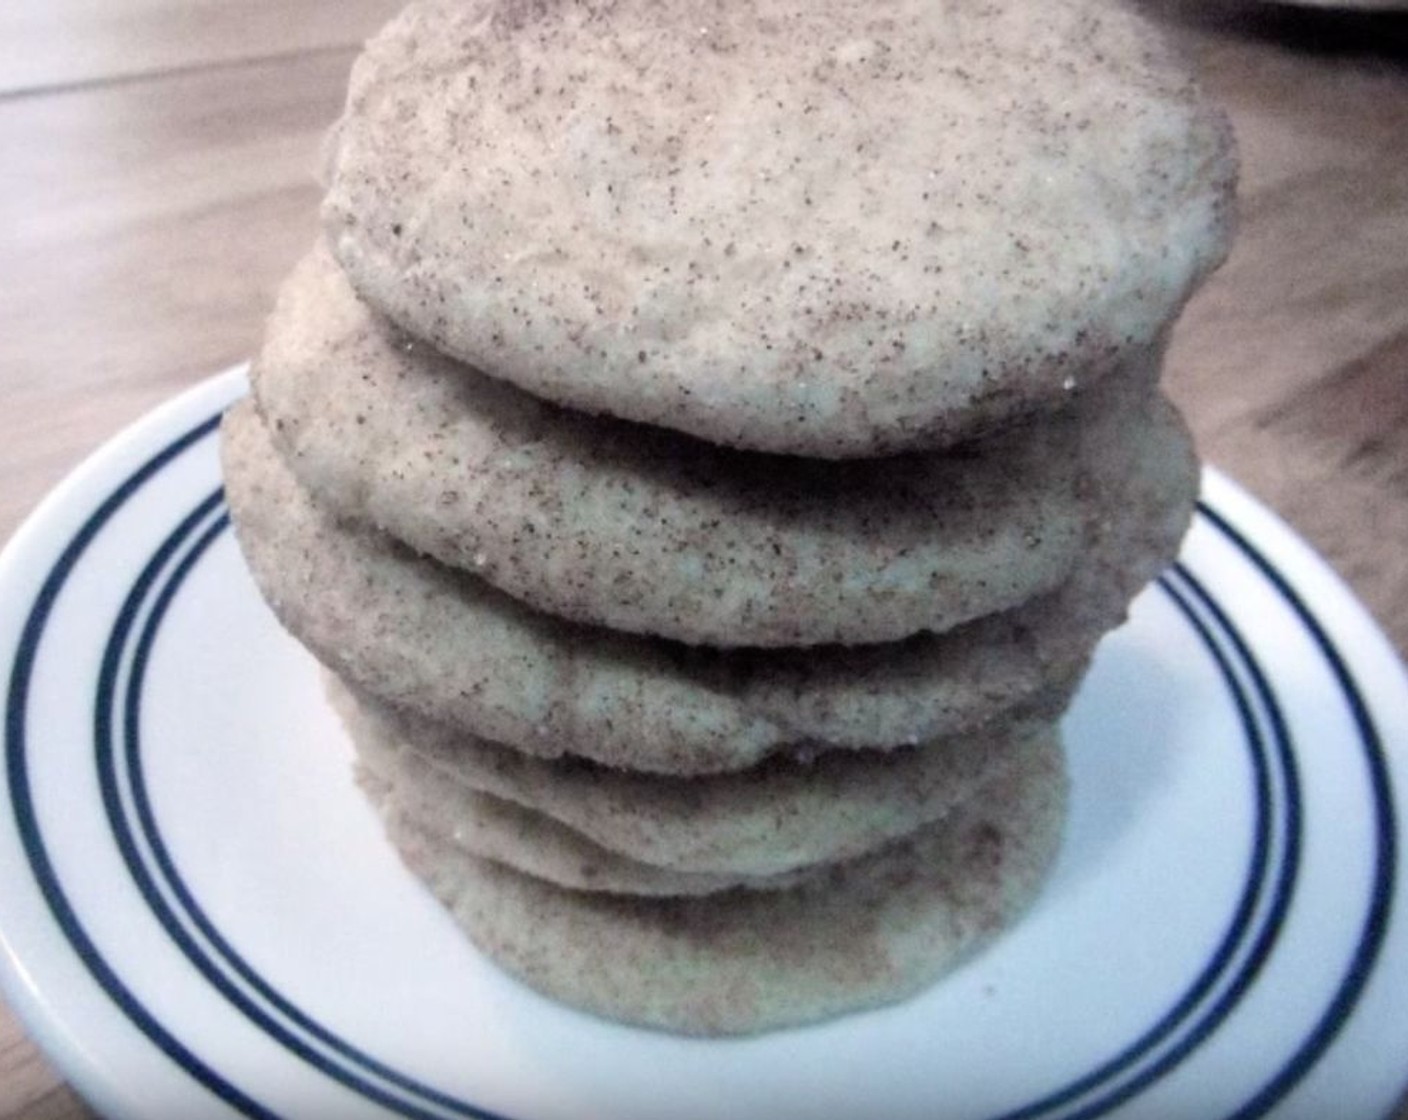 Gluten-Free Snickerdoodle Cookies